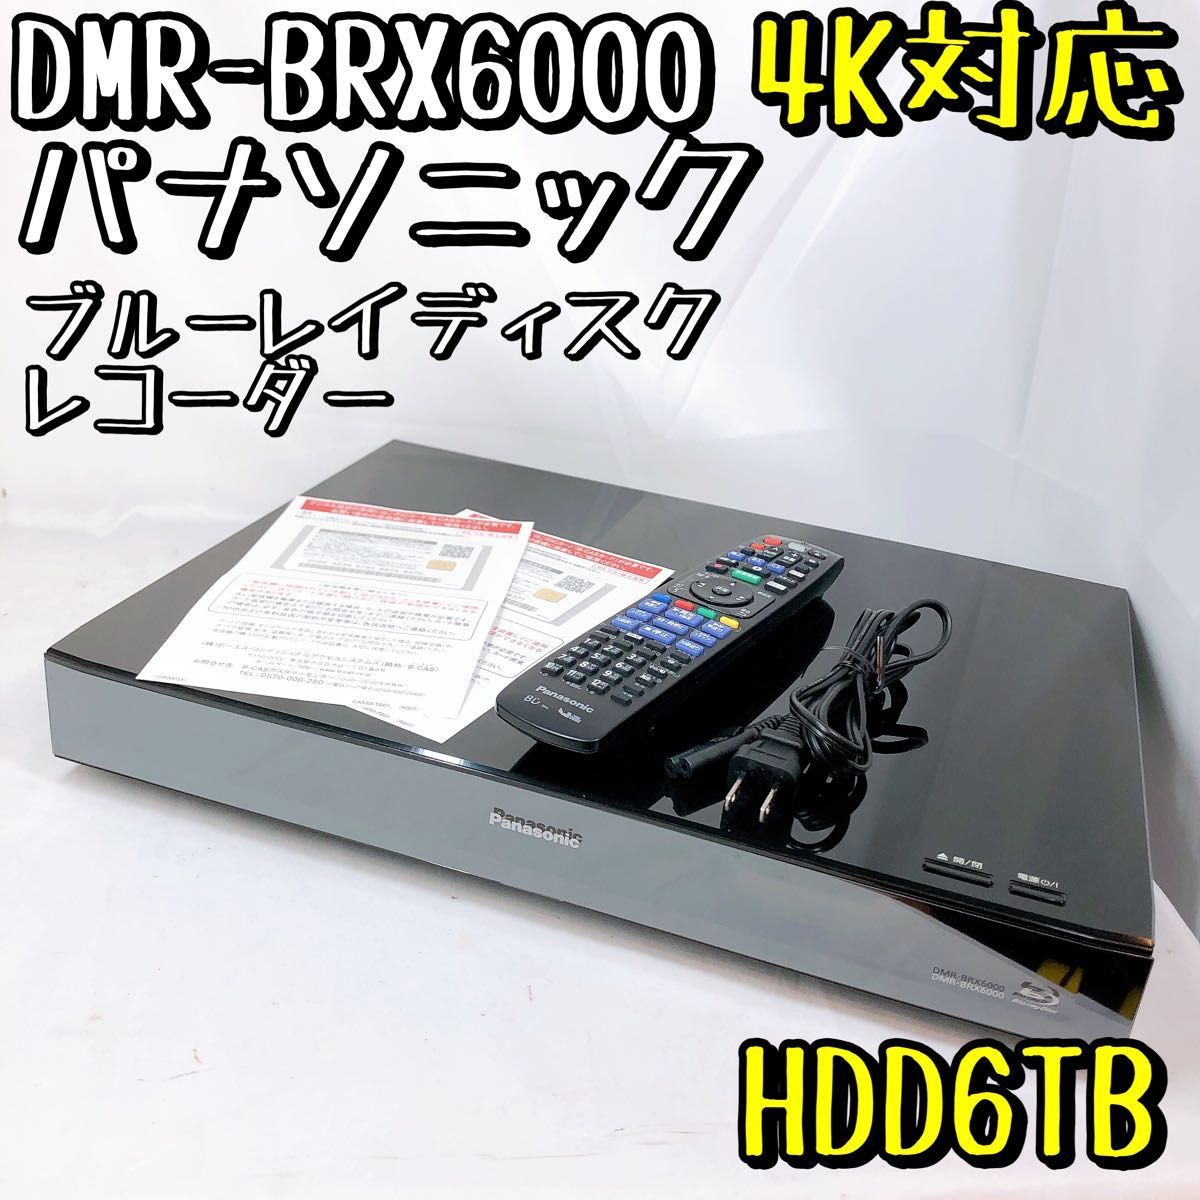 高級品市場 パナソニック 【美品】DMR-BRX6000 HDD搭載 Panasonic ブルーレイレコーダー 6TB パナソニック